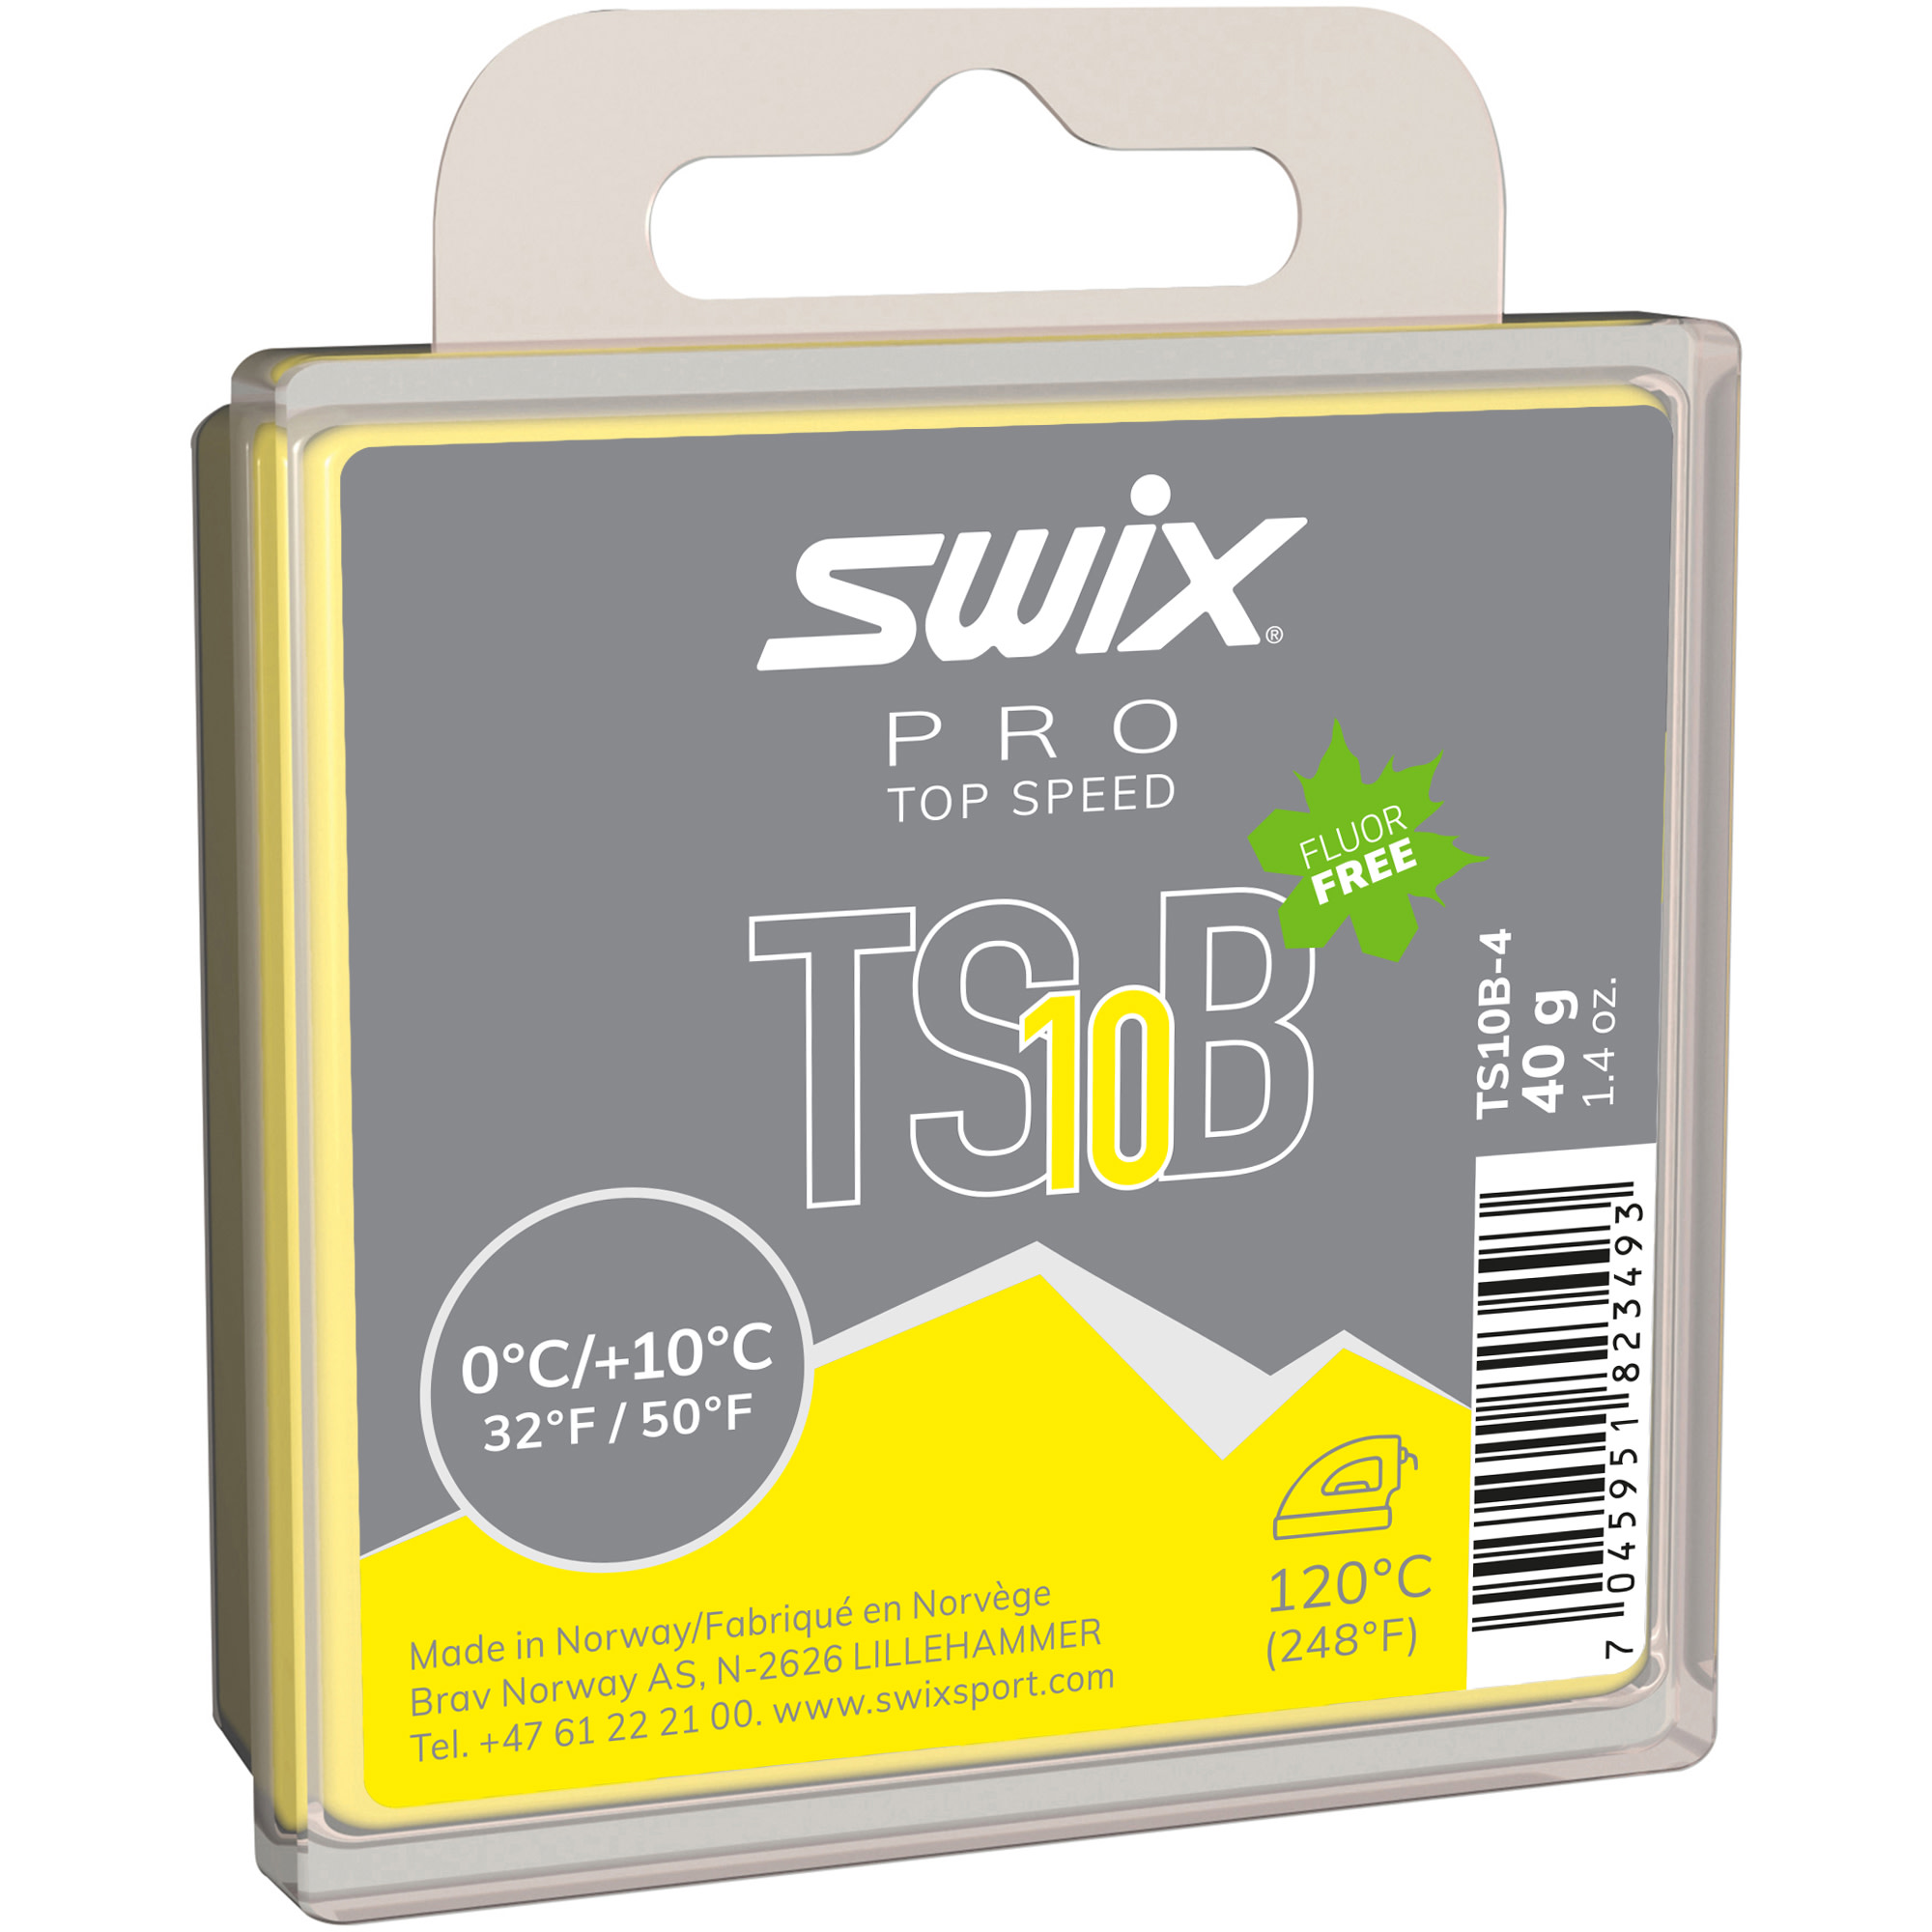 swix TS10 Black 0°c/+10°c